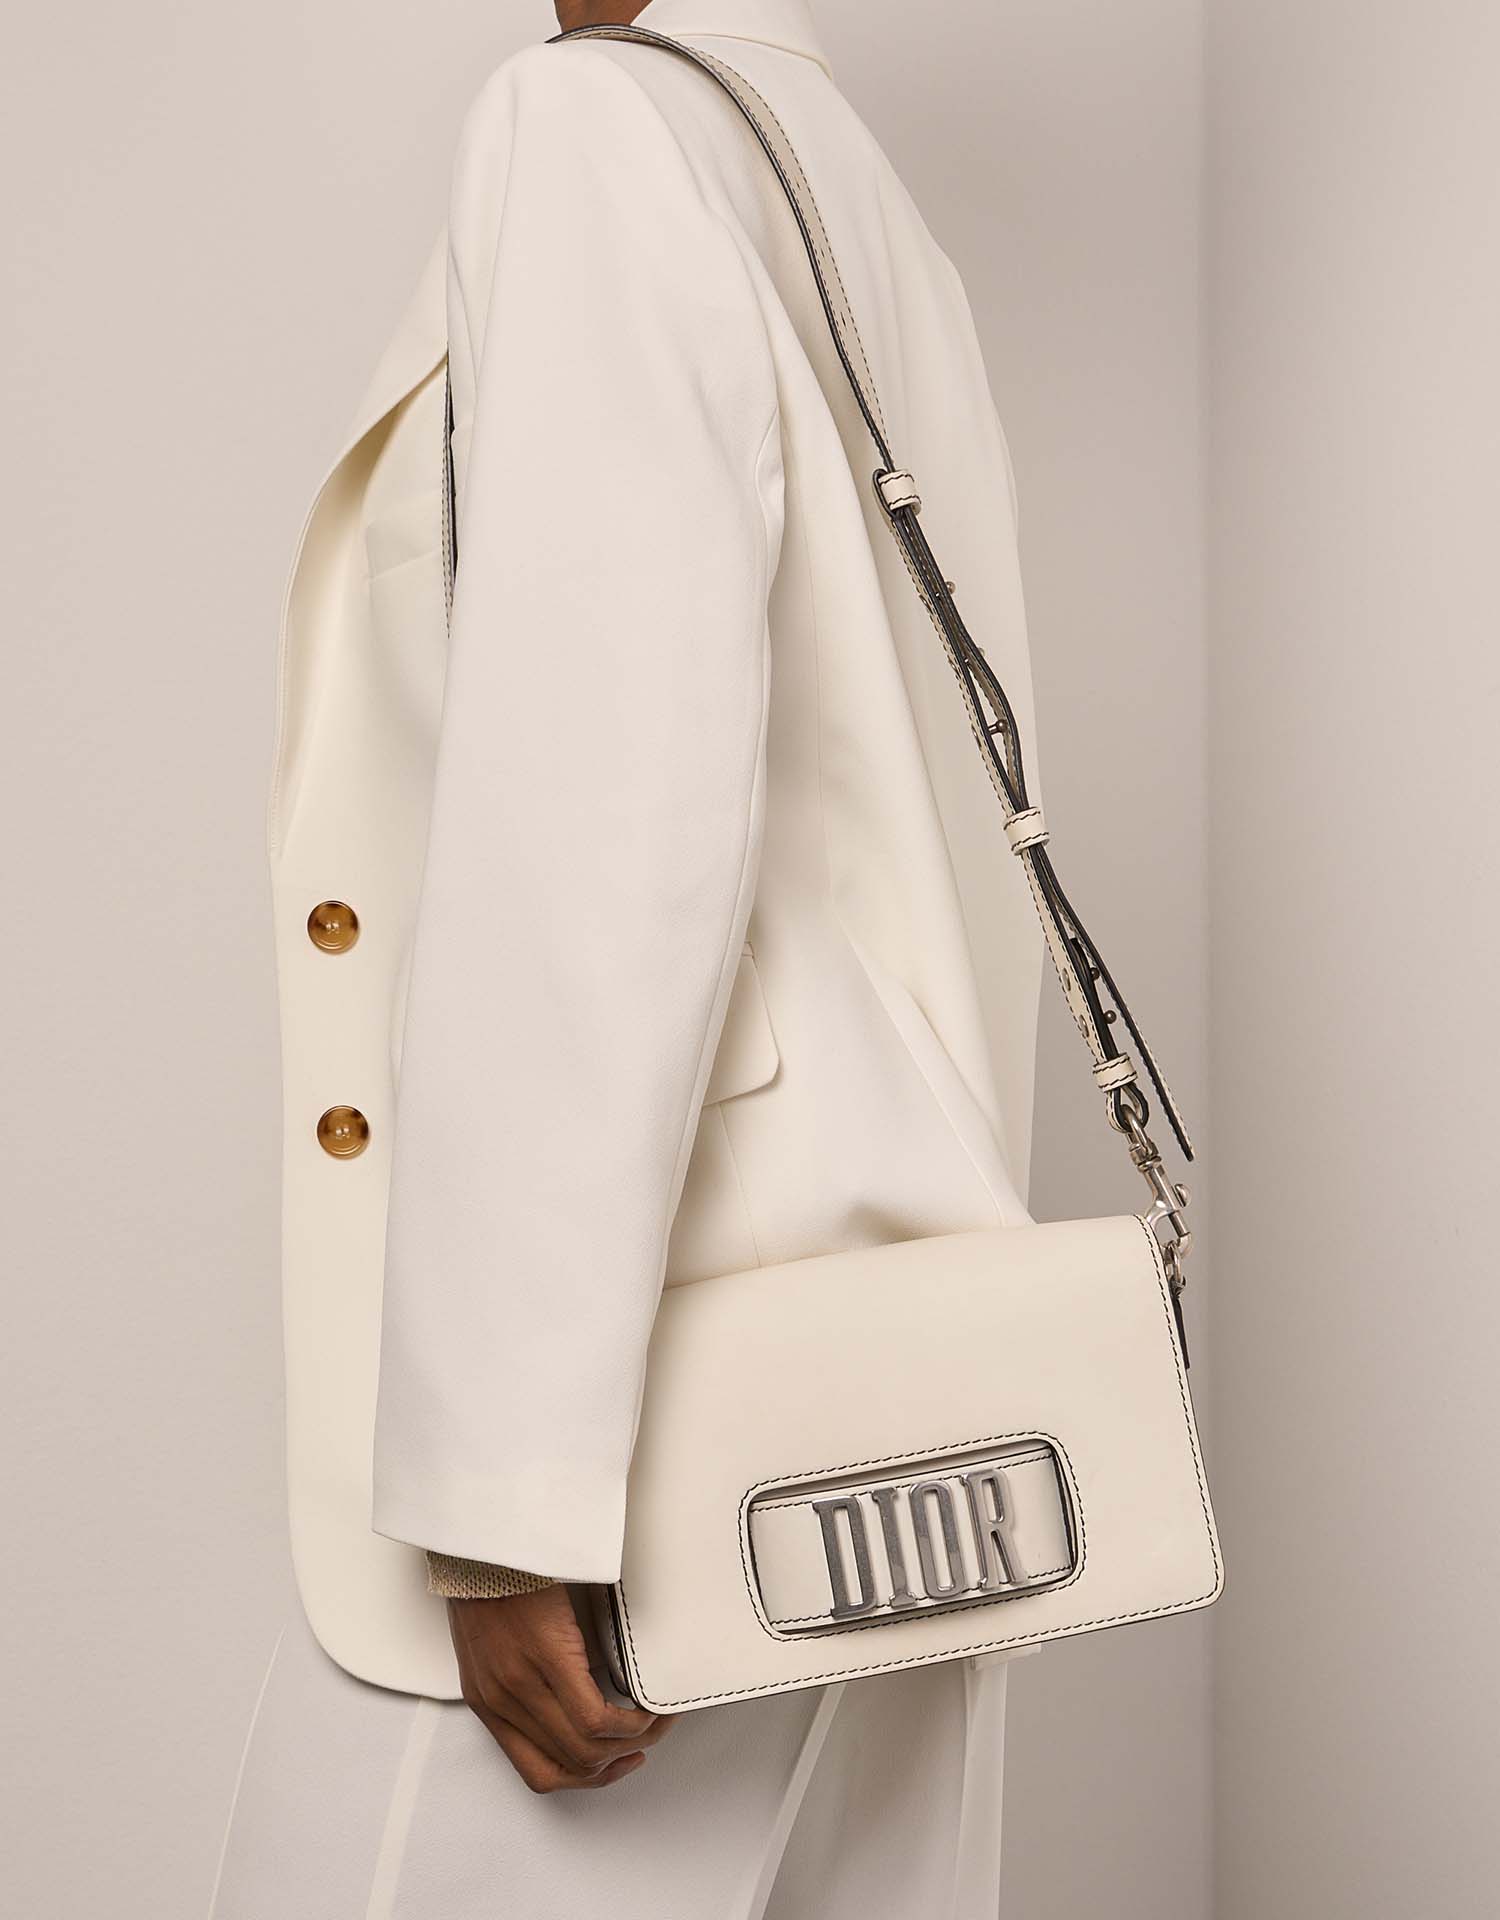 Gebrauchte Dior Tasche Dio(r)evolution Kalbsleder Weiß Weißes Modell | Verkaufen Sie Ihre Designertasche auf Saclab.com